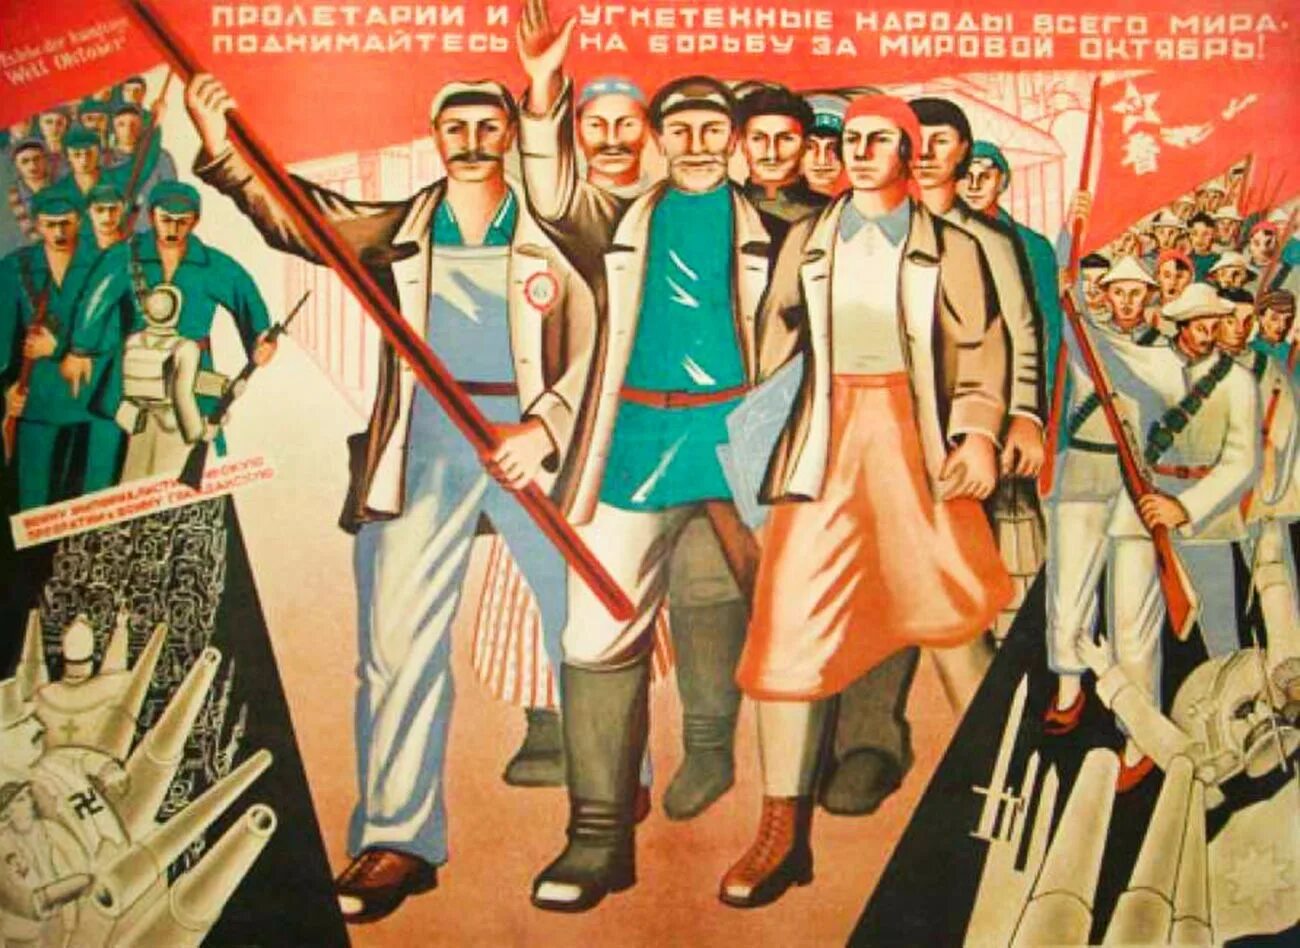 Социалистическая и буржуазная. Плакаты Всемирная Октябрьская Социалистическая революция. Революционные плакаты. Советские революционные плакаты. Агитационные плакаты 1920 х годов.